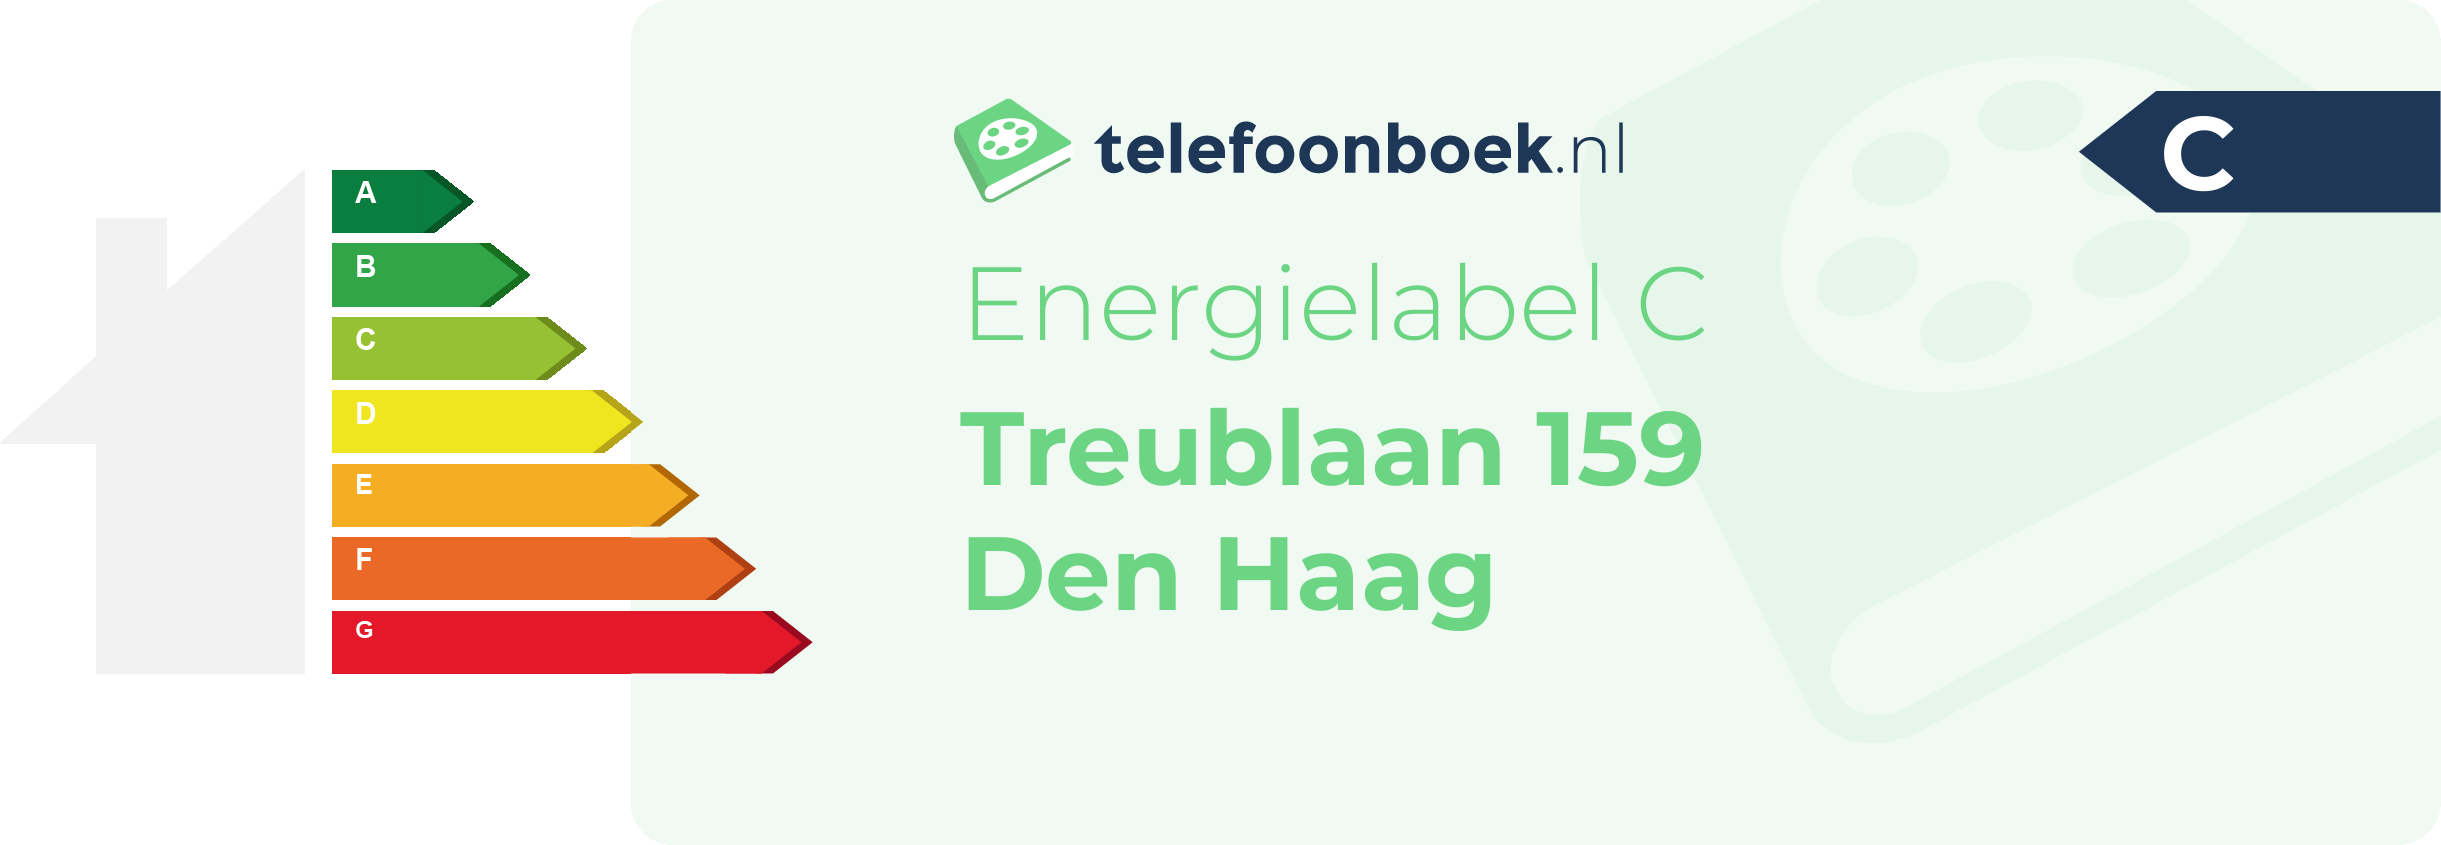 Energielabel Treublaan 159 Den Haag